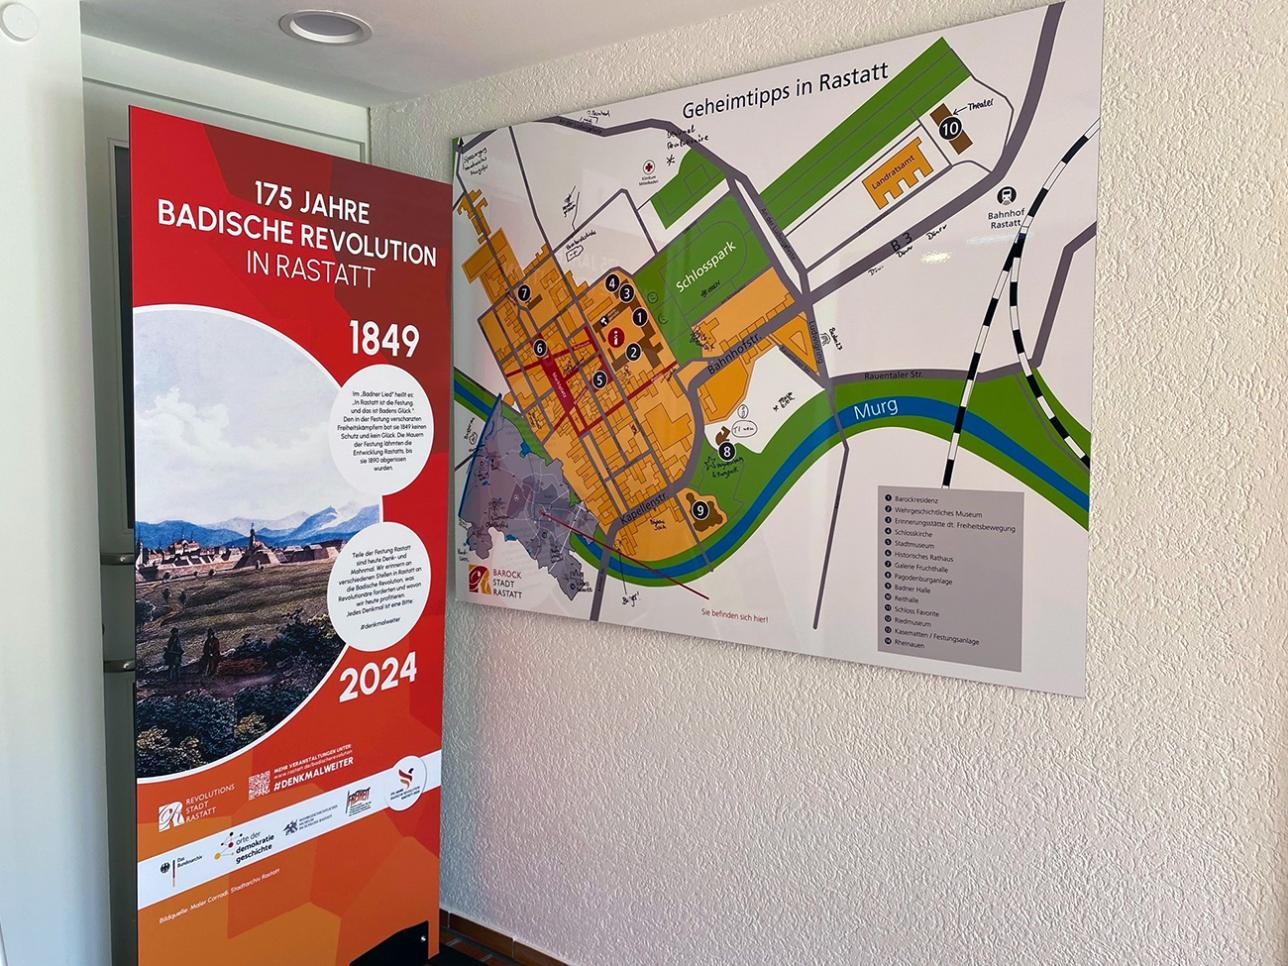 Panneau d'information à l'office de tourisme sur les 175 ans de la Révolution badoise